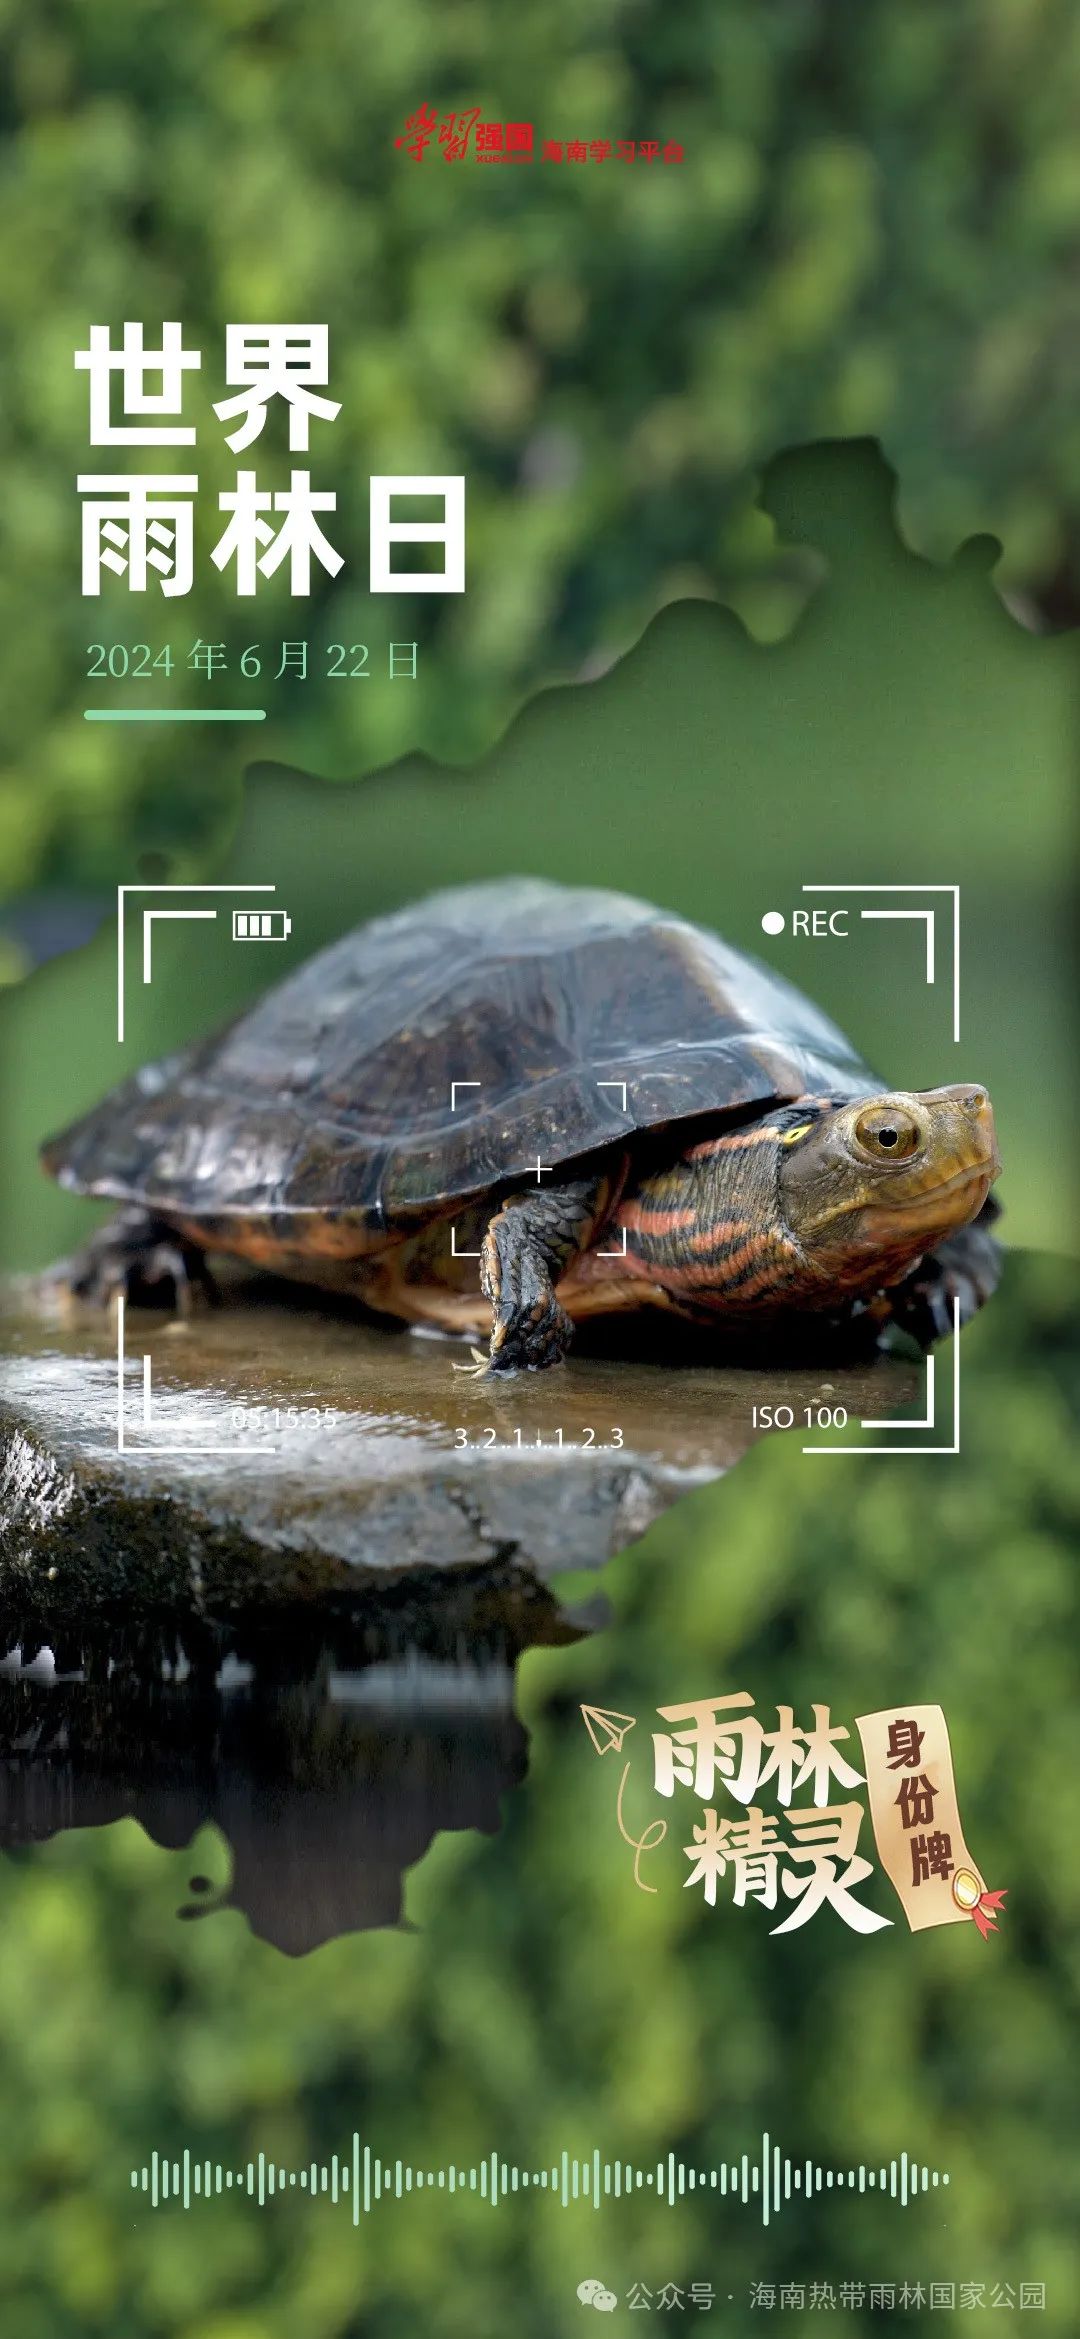 雨林动物:海南四眼斑水龟